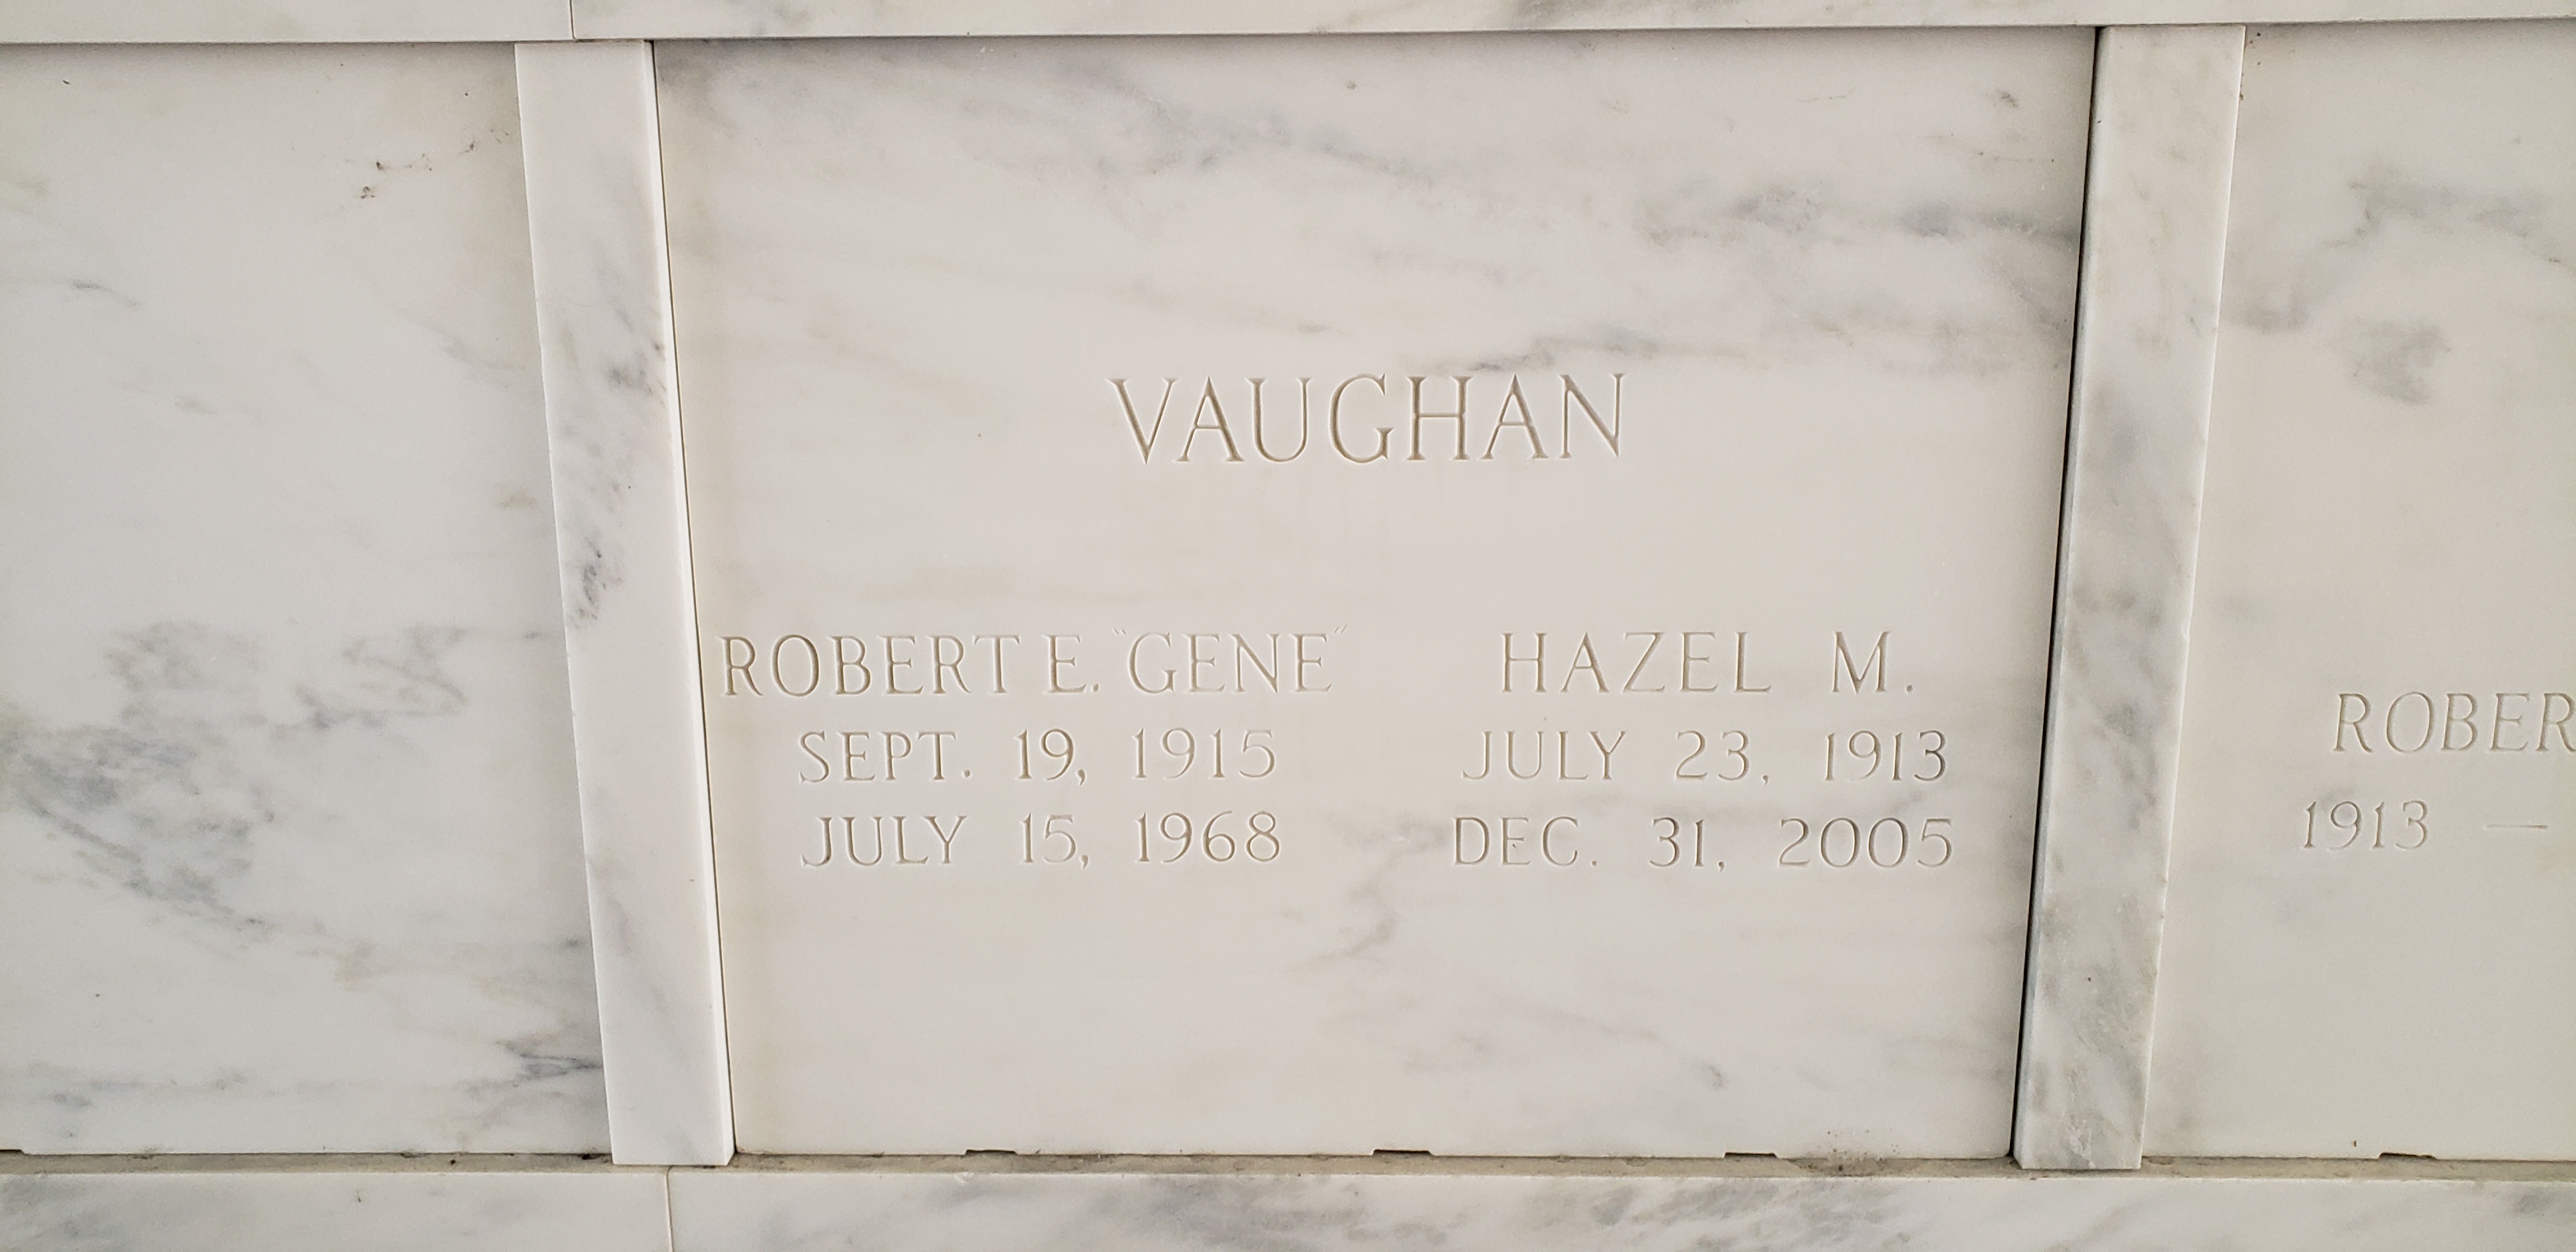 Robert E Gene Vaughan